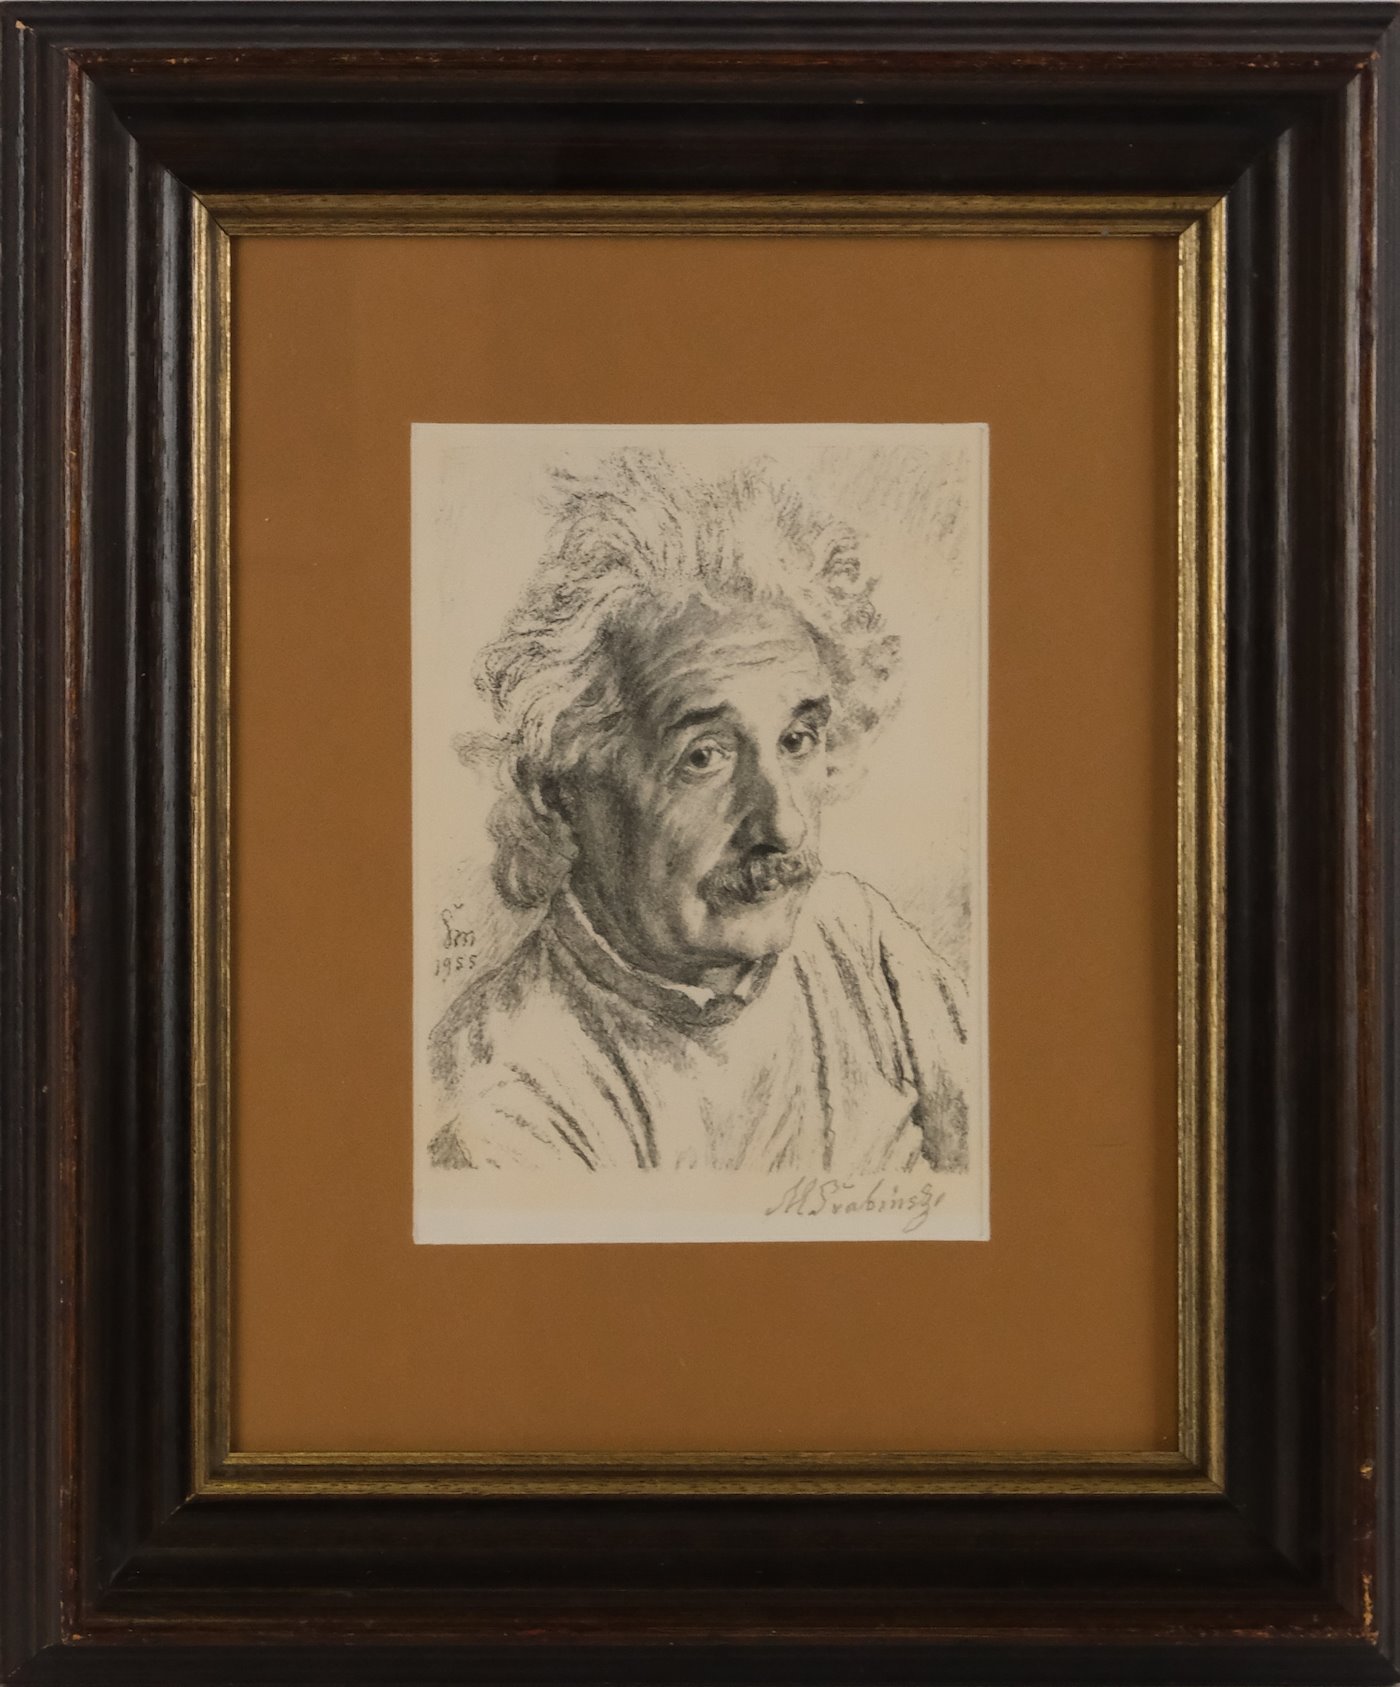 Max Švabinský - Einstein